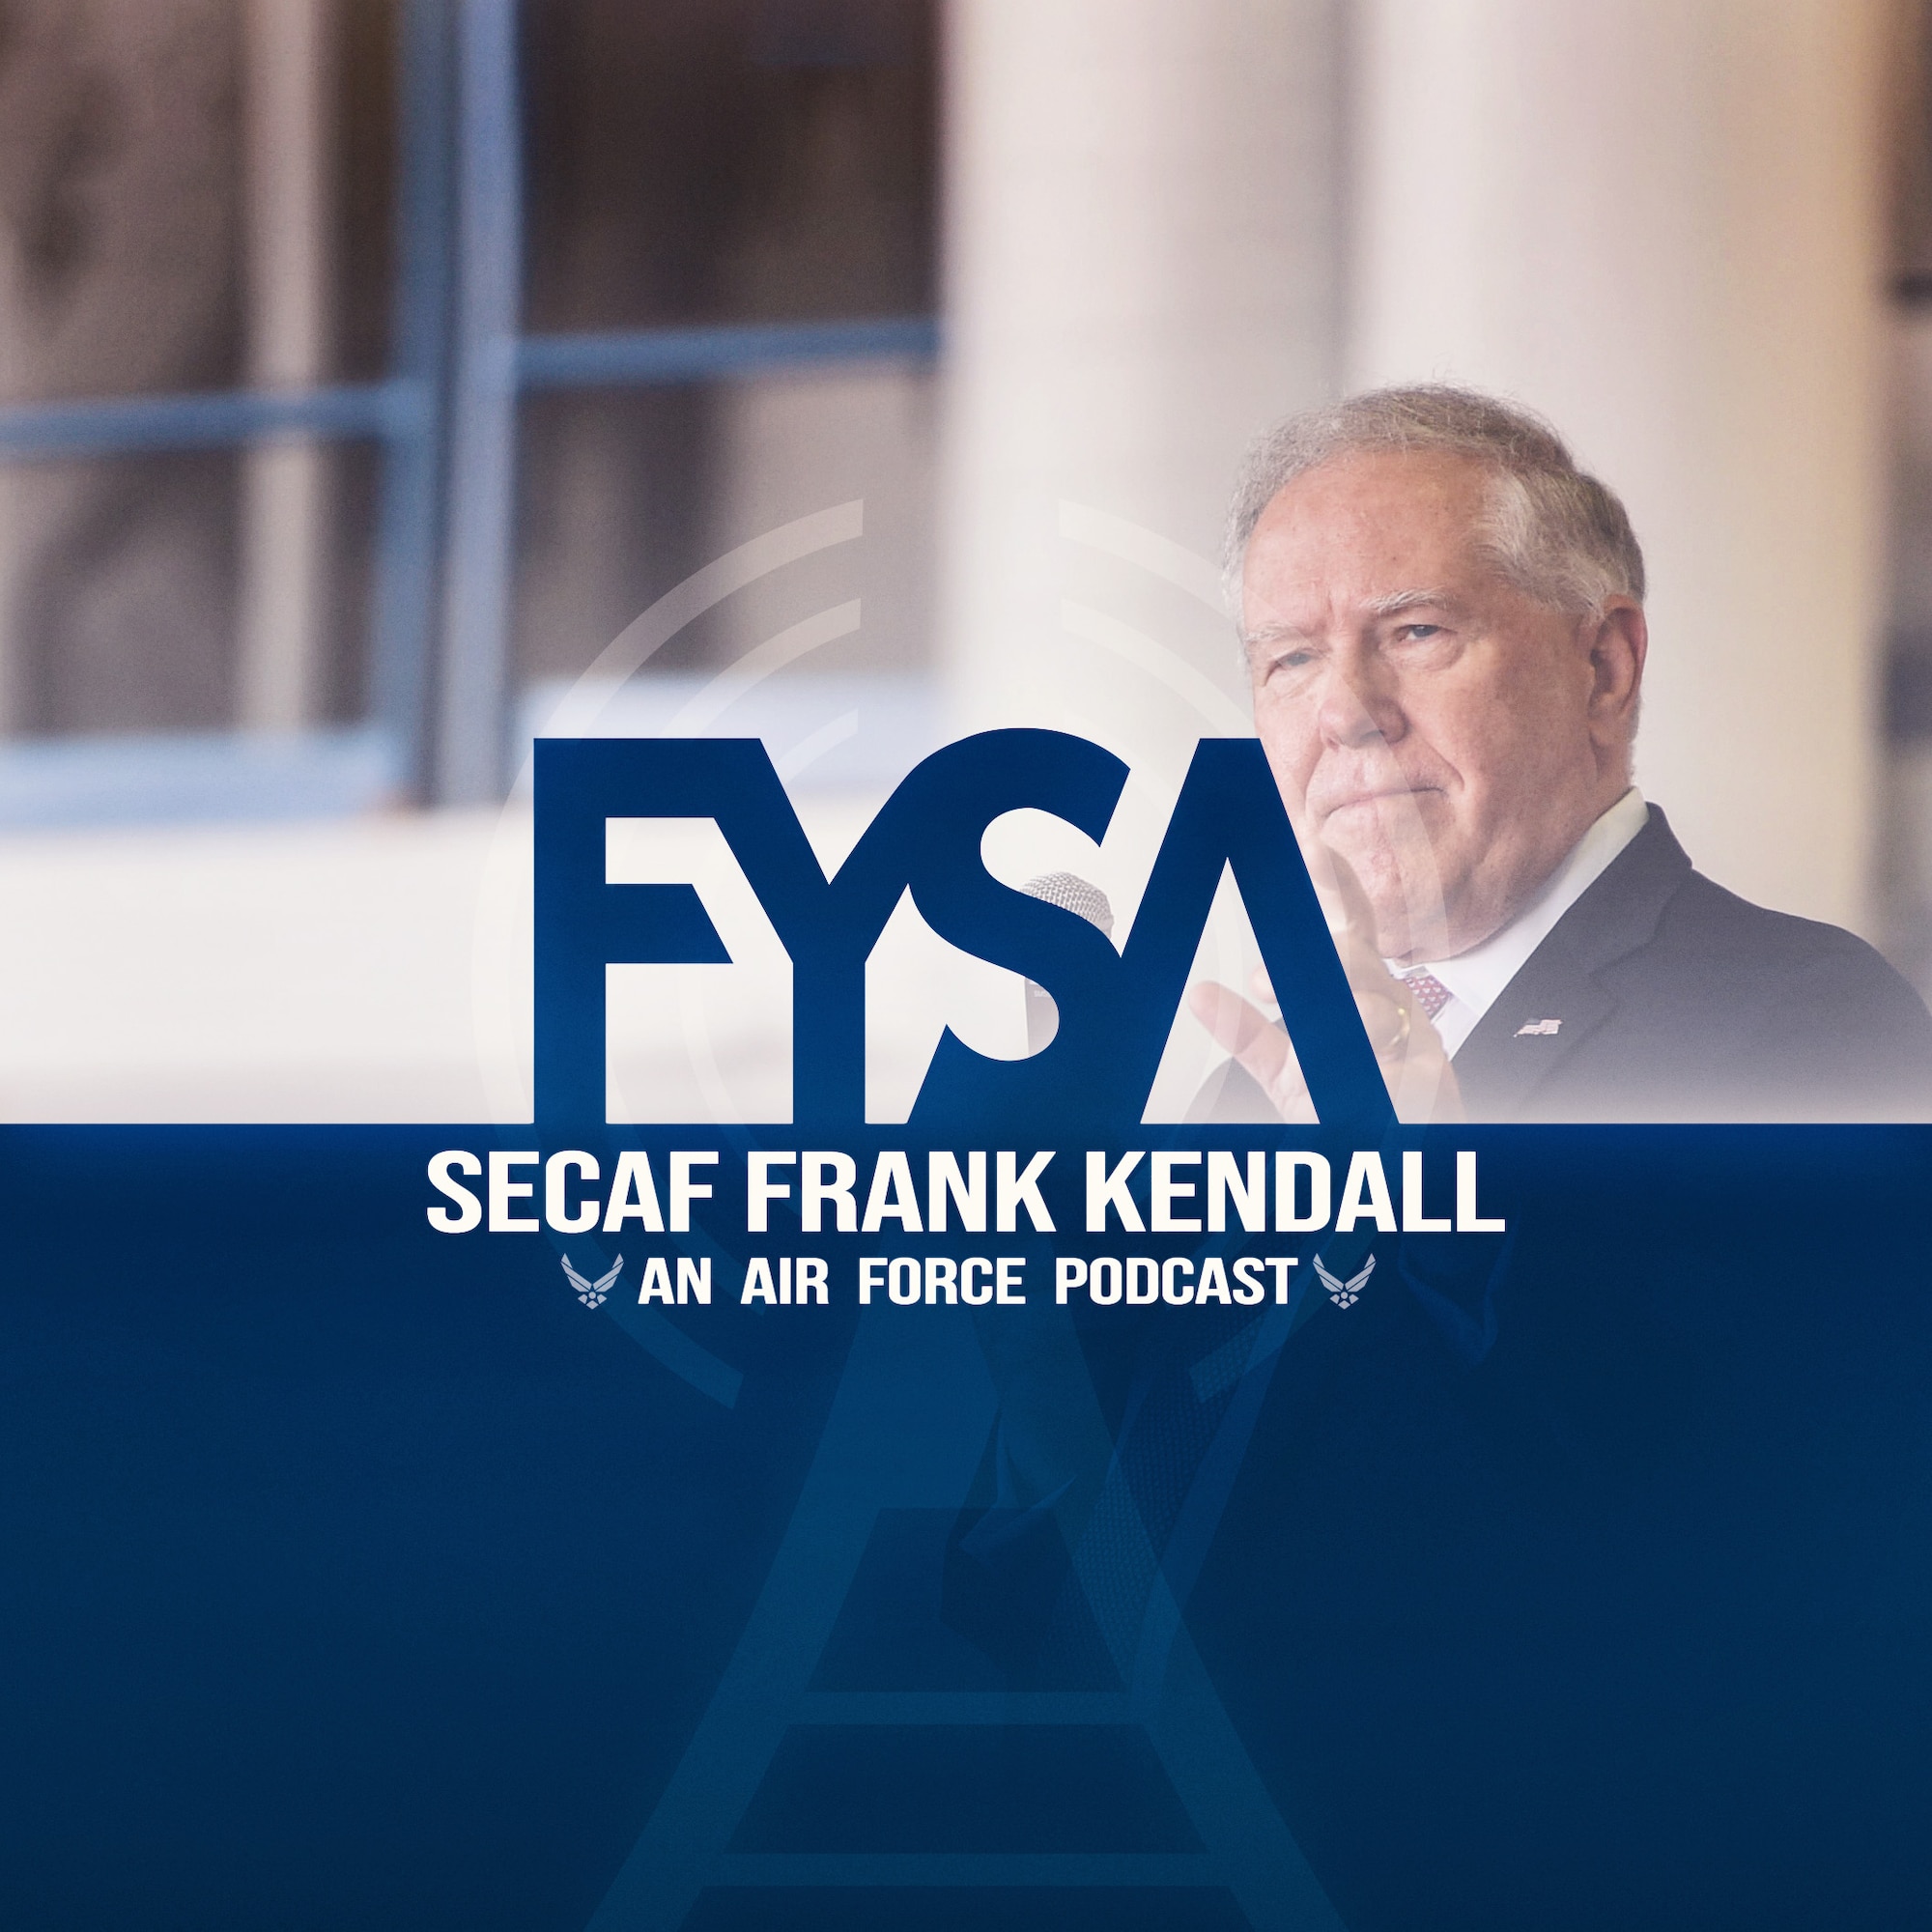 FYSA: SecAF Frank Kendall